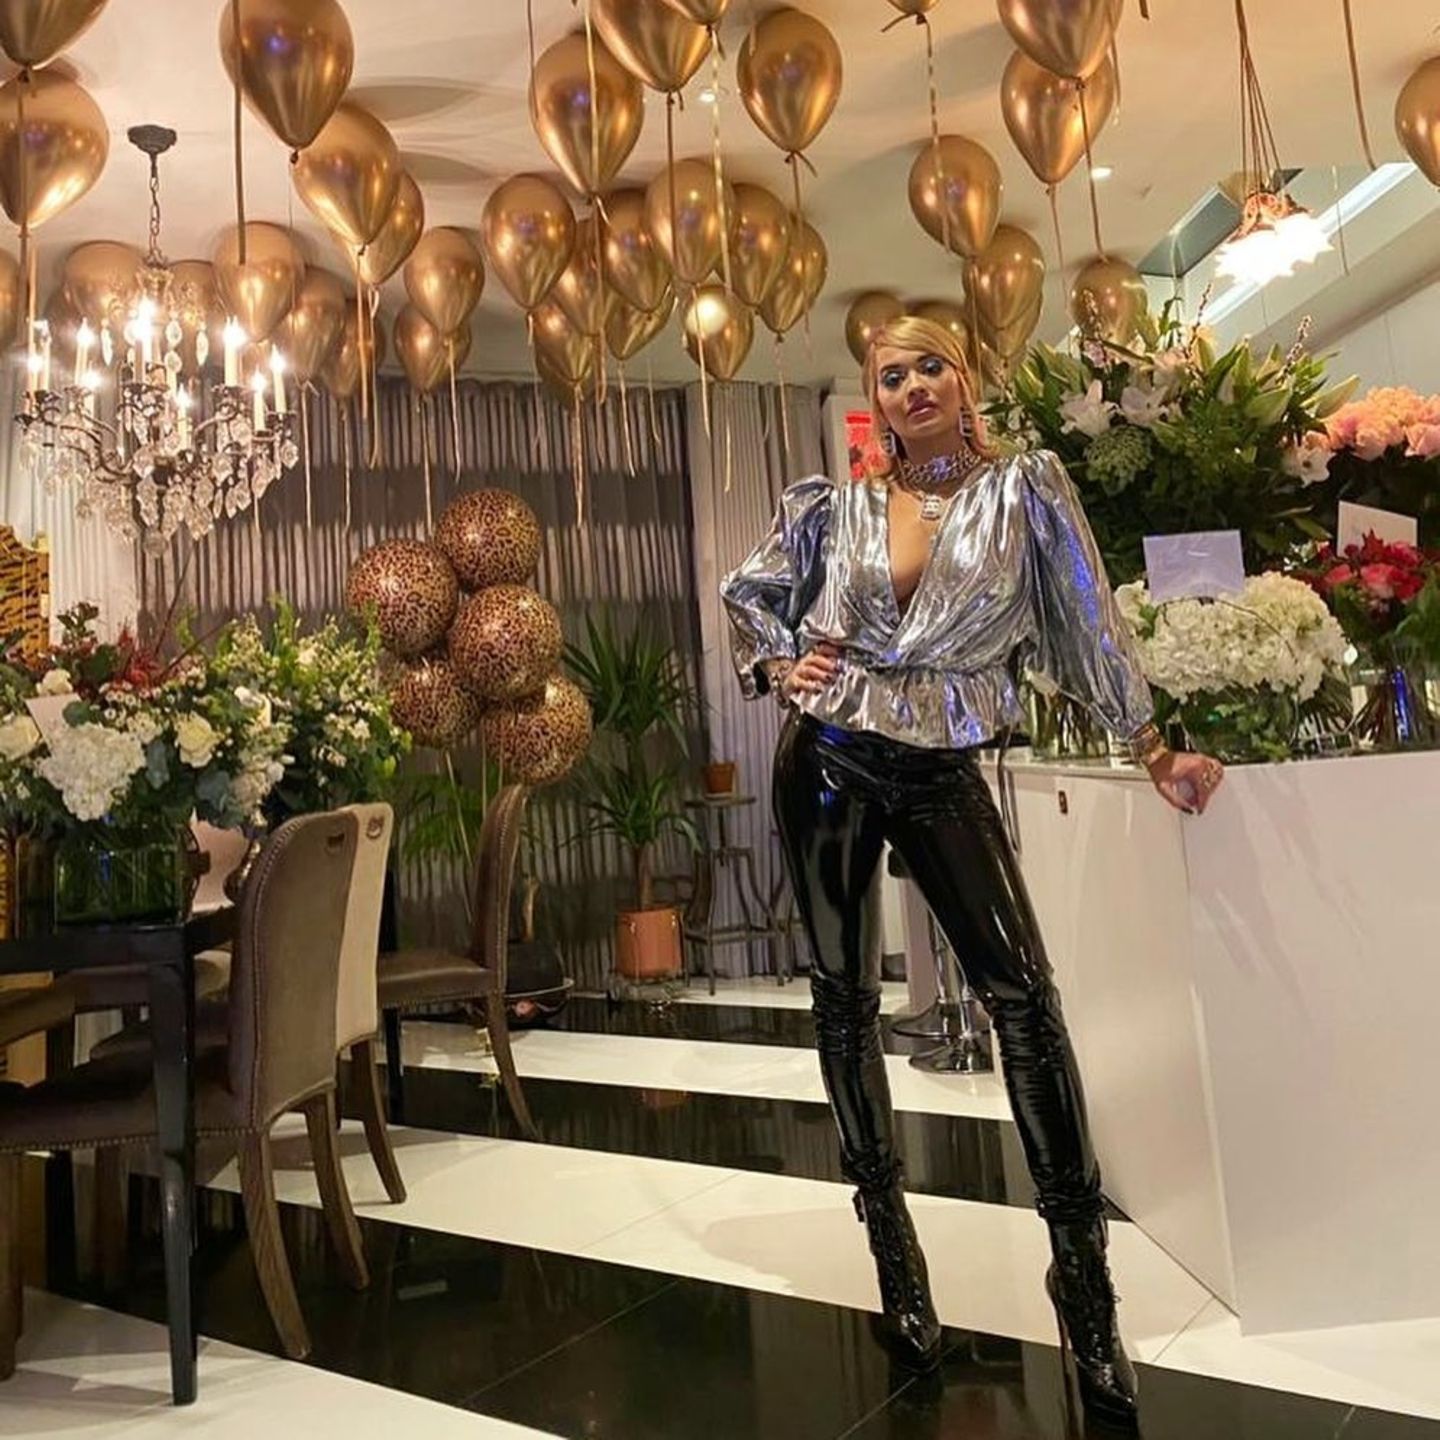 Pompös, extravagant und ein bisschen dekadent feierte Rita Ora am Wochenende ihren 30. Geburtstag. Doch trotz unzähliger Luftballons, riesiger Blumensträuße und einer mehrstöckigen Geburtstagstorte können wir unseren Blick einfach nicht von ihrem Wow-Dekolleté abwenden. Die Sängerin lässt in einem Silber-Metallic-Oberteil tief blicken und kombiniert zur Bluse eine schwarze Lack-Leggings. Und als wäre das nicht schon genug, setzt Rita auch in Sachen Make-up mit einem XXL-Cat-Eye-Lidstrich voll und ganz auf Extravaganz. 